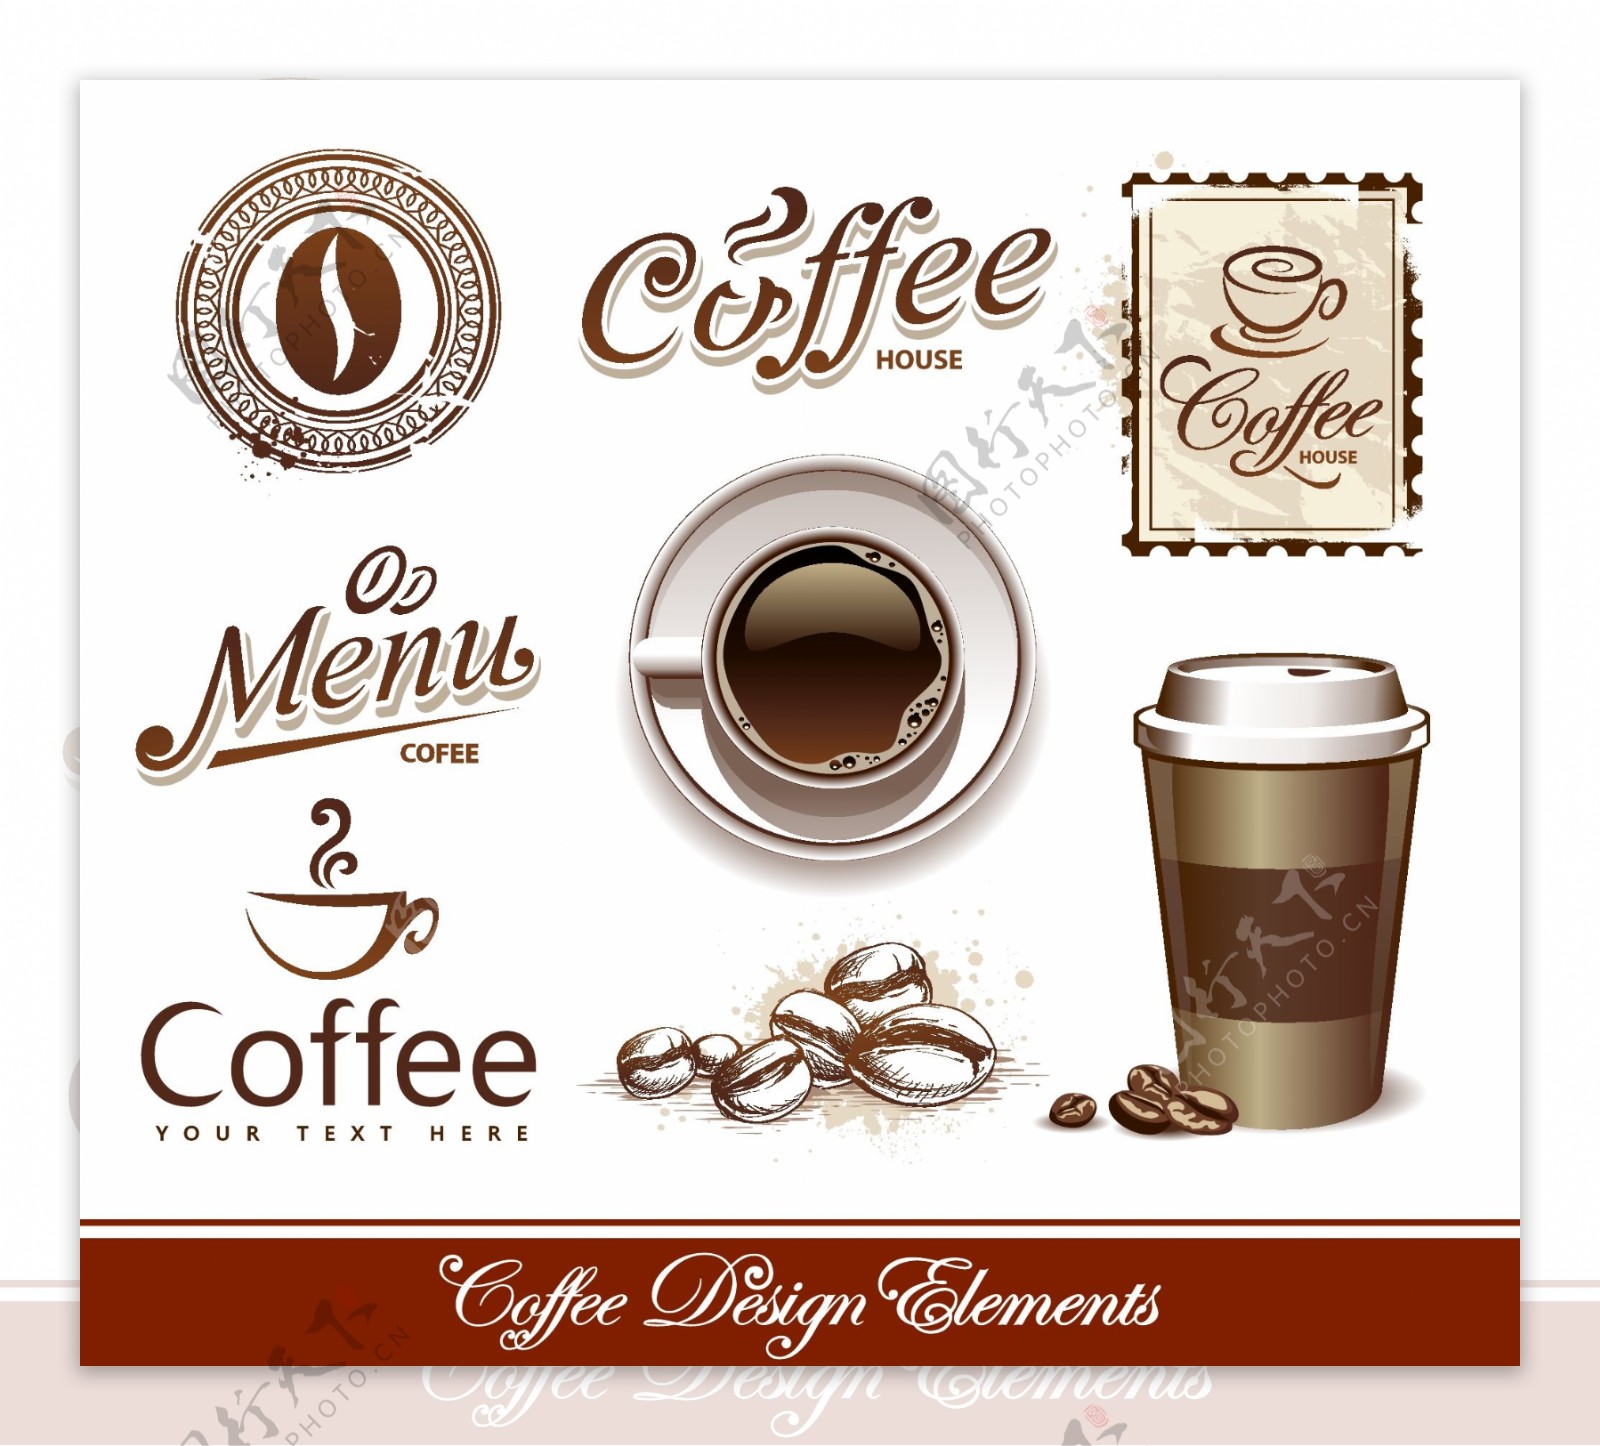 咖啡标签设计